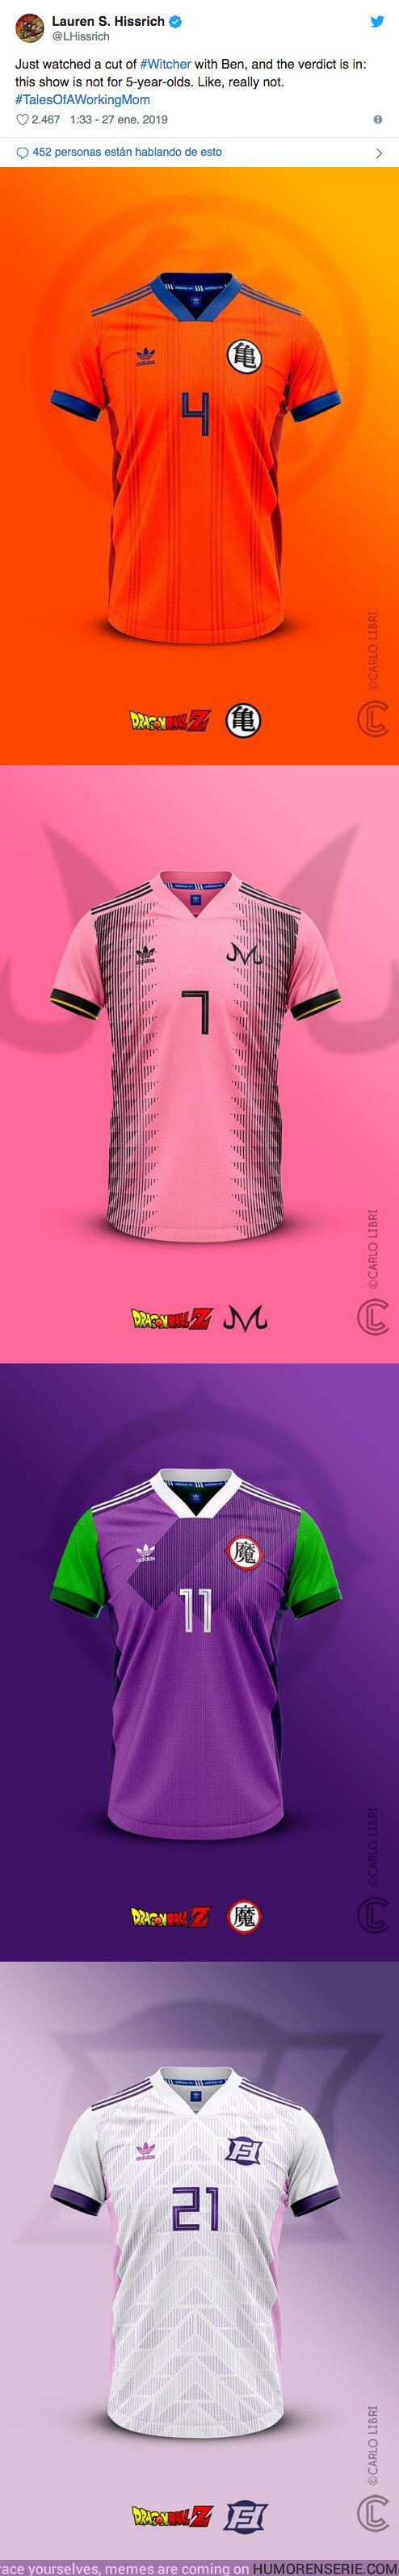 34505 - Carlos Libri diseña estás alucinantes camisetas Adidas basadas en Dragon Ball